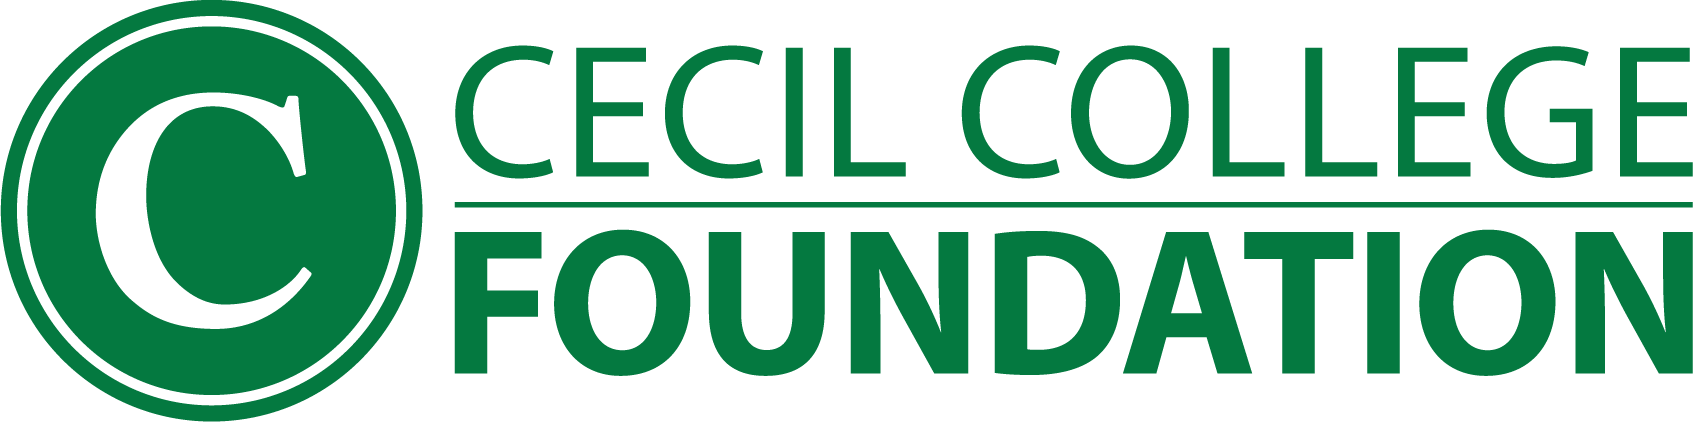 Cecil College Foundation logo.